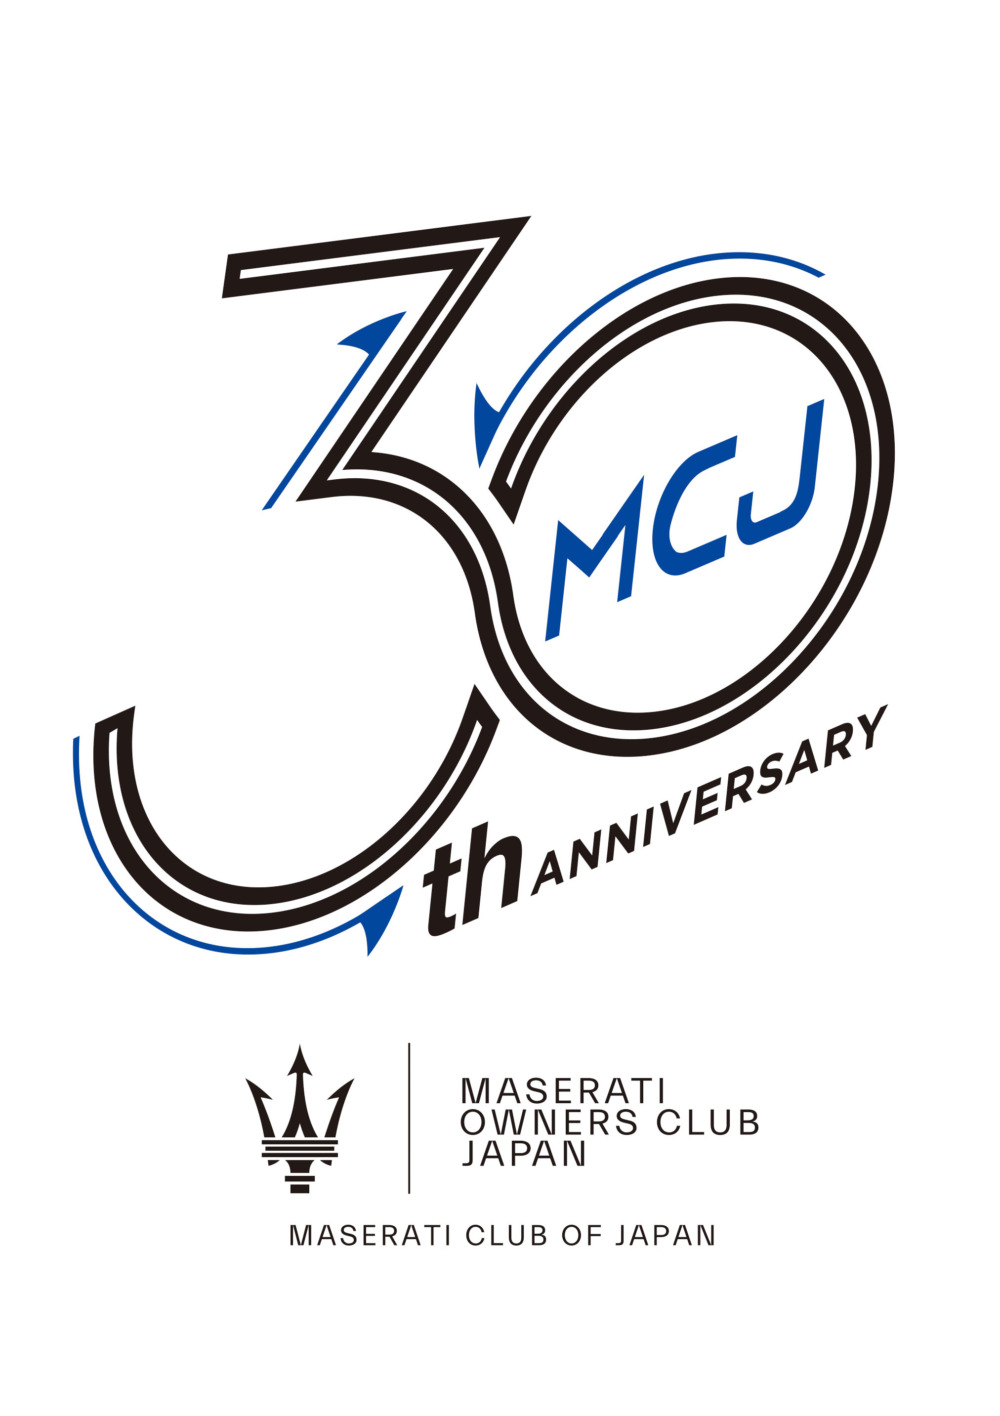 11月18～19日に開催されるマセラティ・クラブ・オブ・ジャパンの年次イベント『マセラティデイ』。今回はクラブ設立30周年の節目となる。